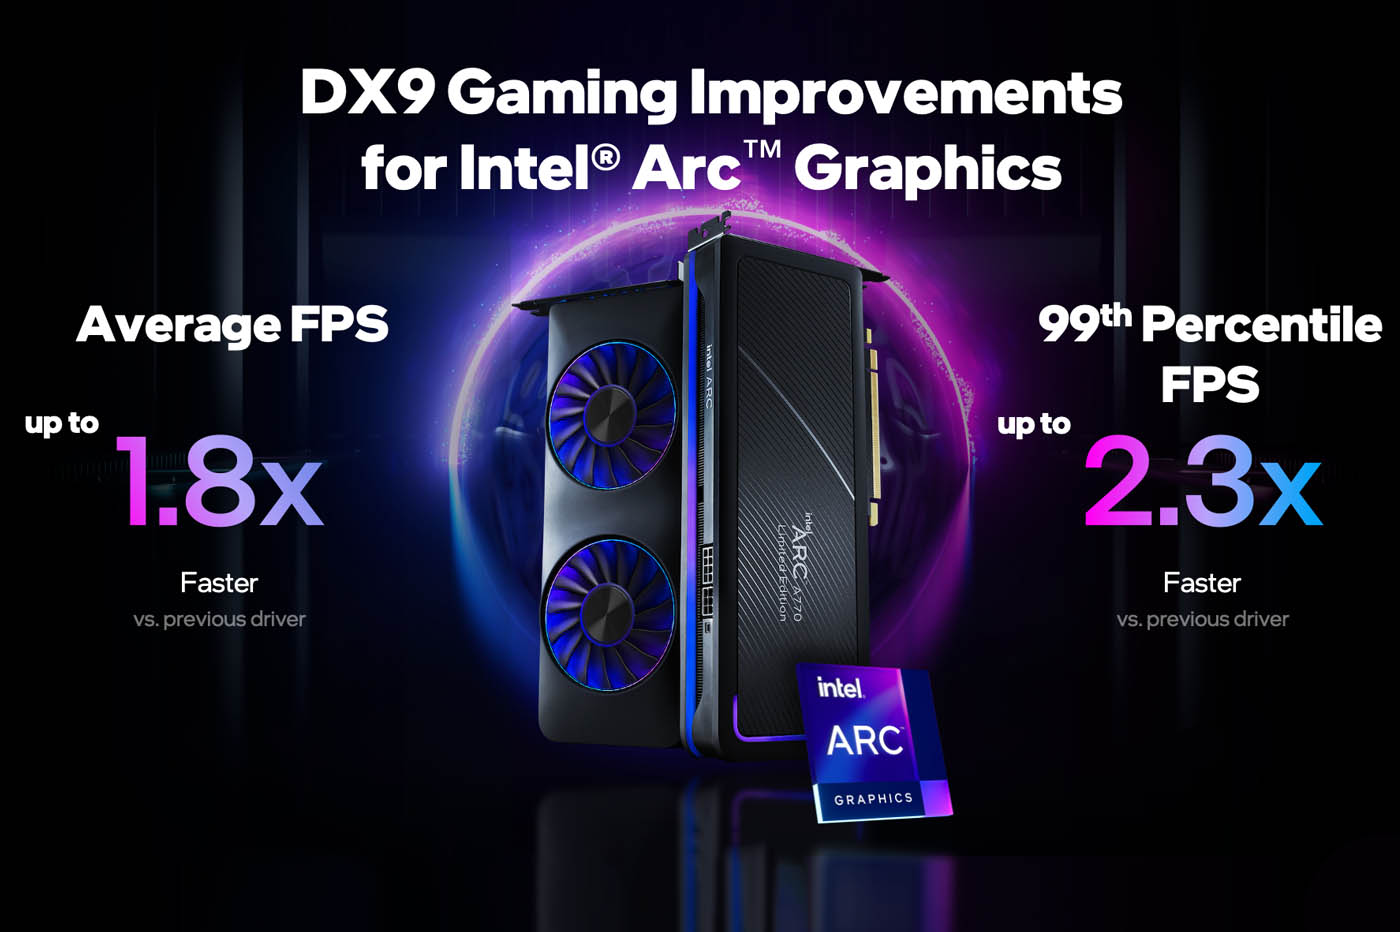 Intel double les performances de ses cartes graphiques ARC sur les anciens jeux DX9